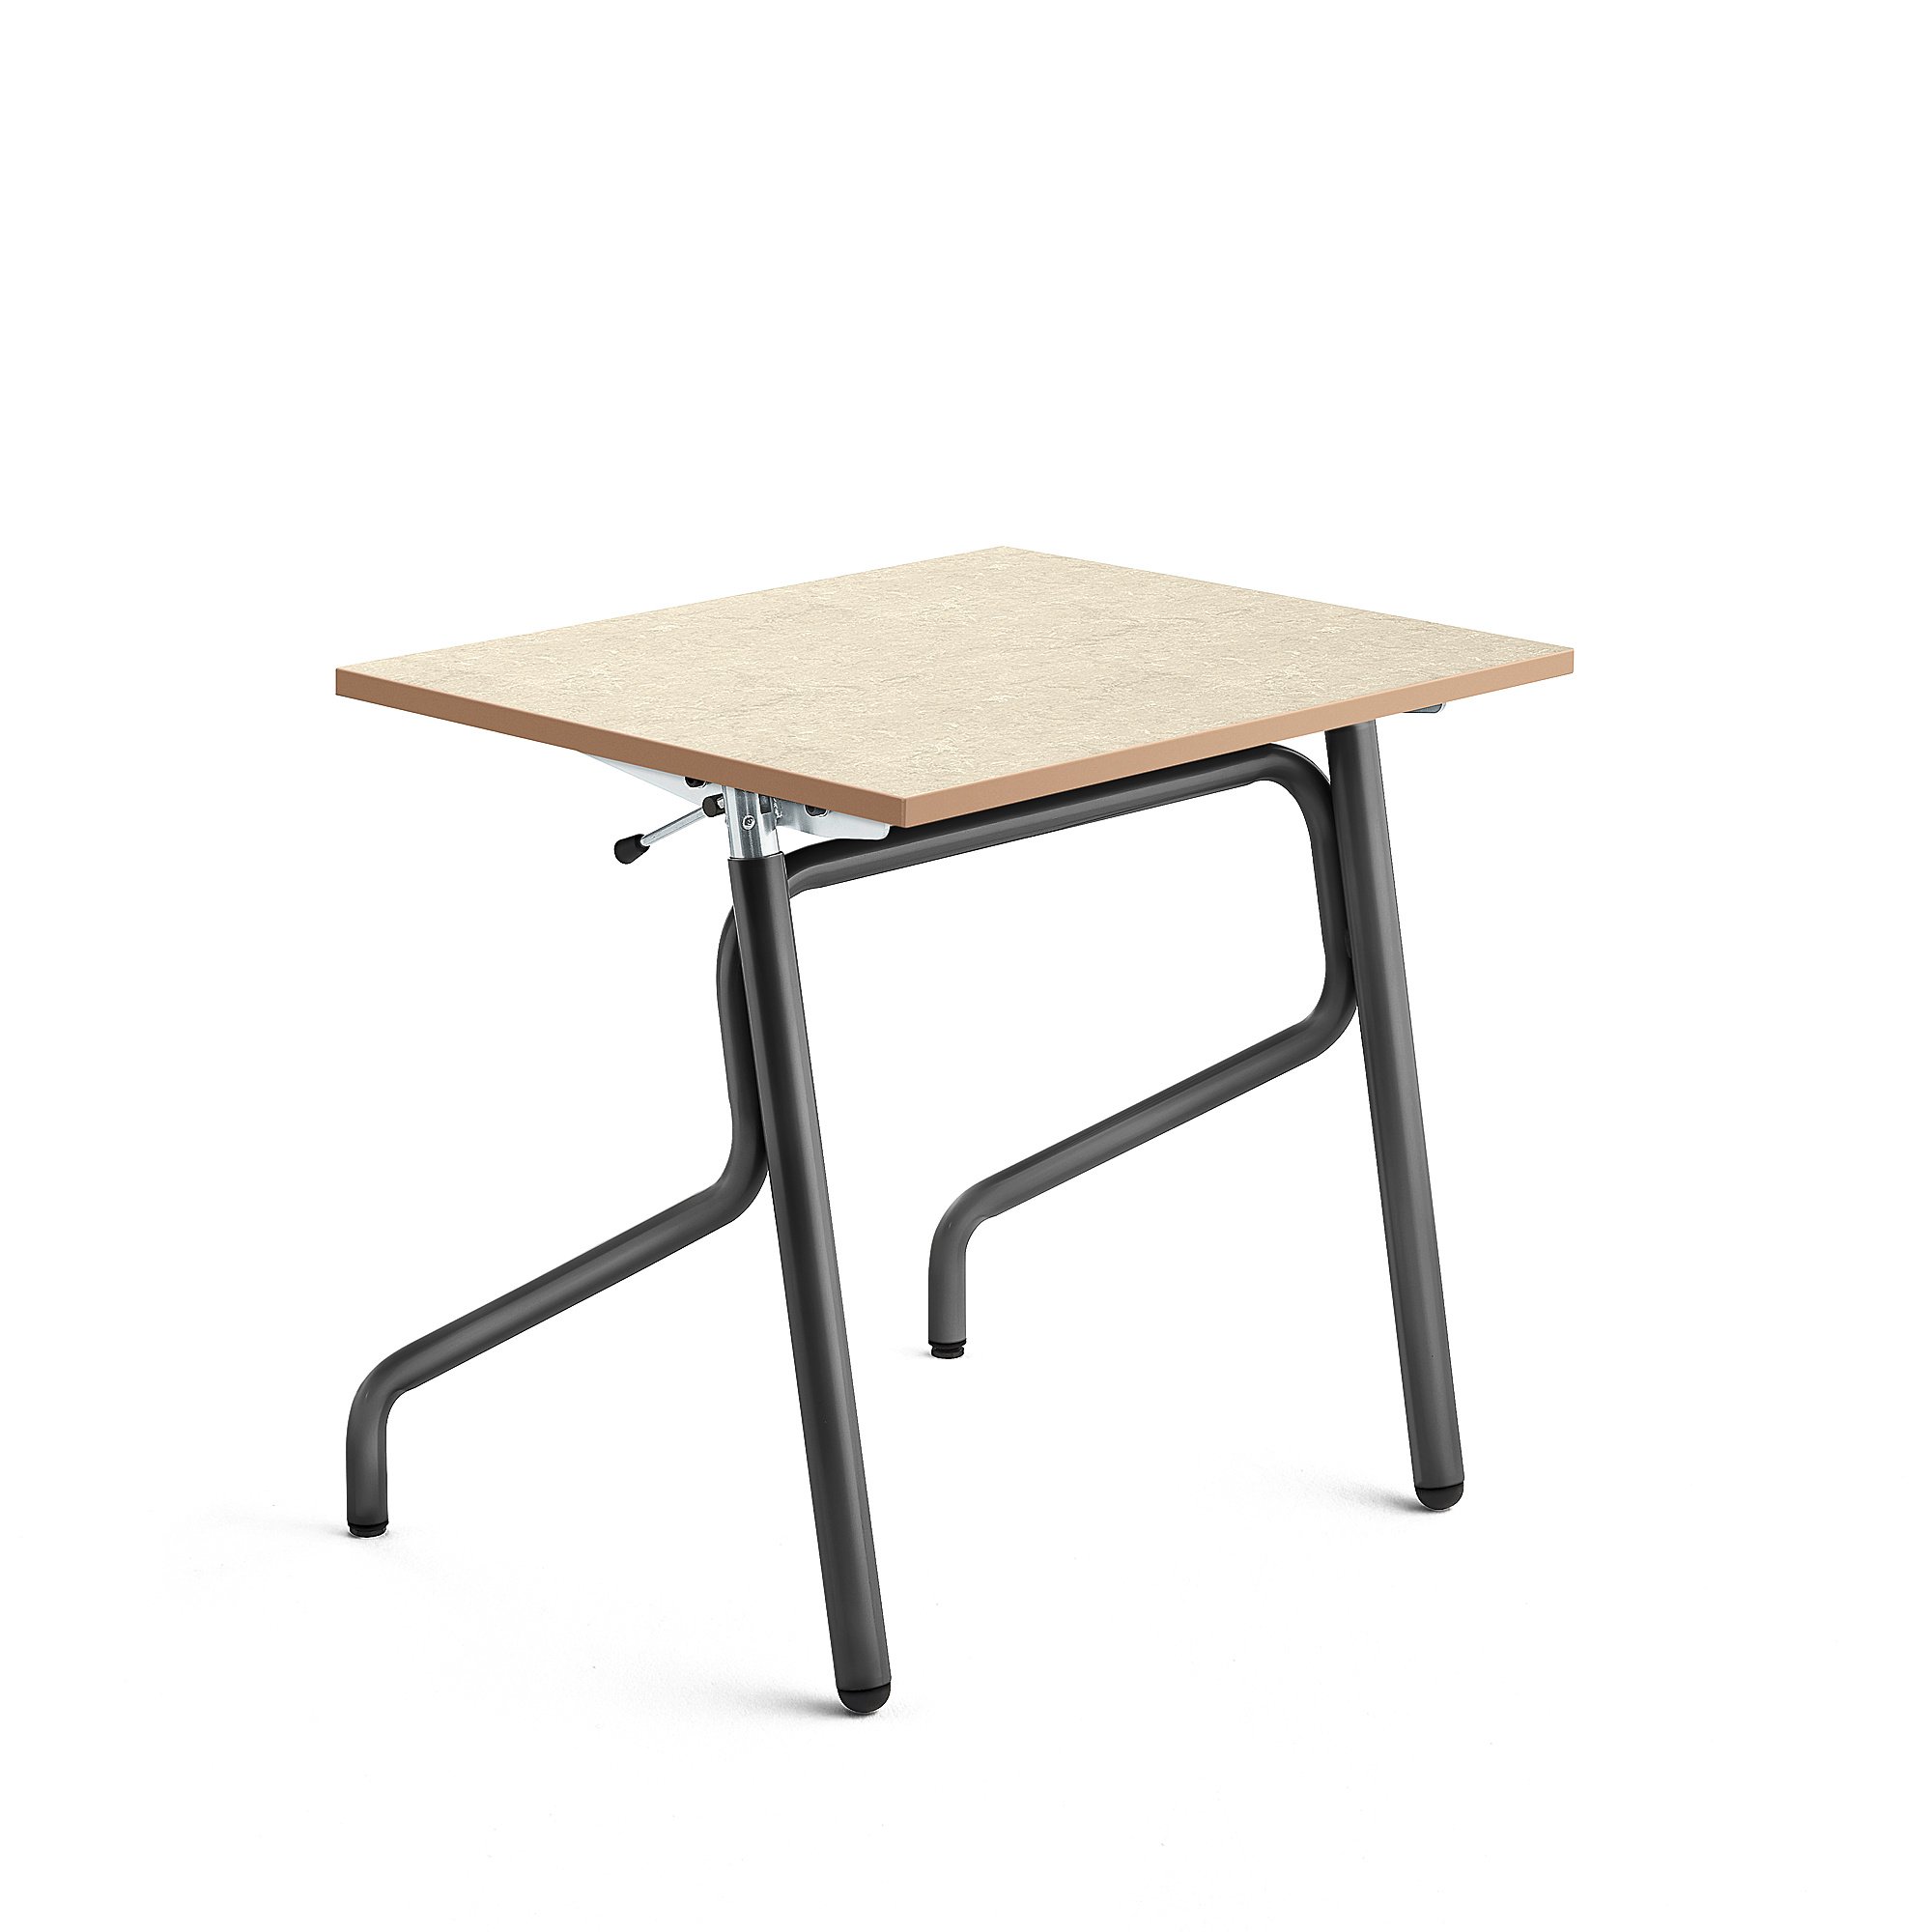 Školní lavice ADJUST, výškově nastavitelná, 700x600 mm, linoleum, béžová, antracitově šedá